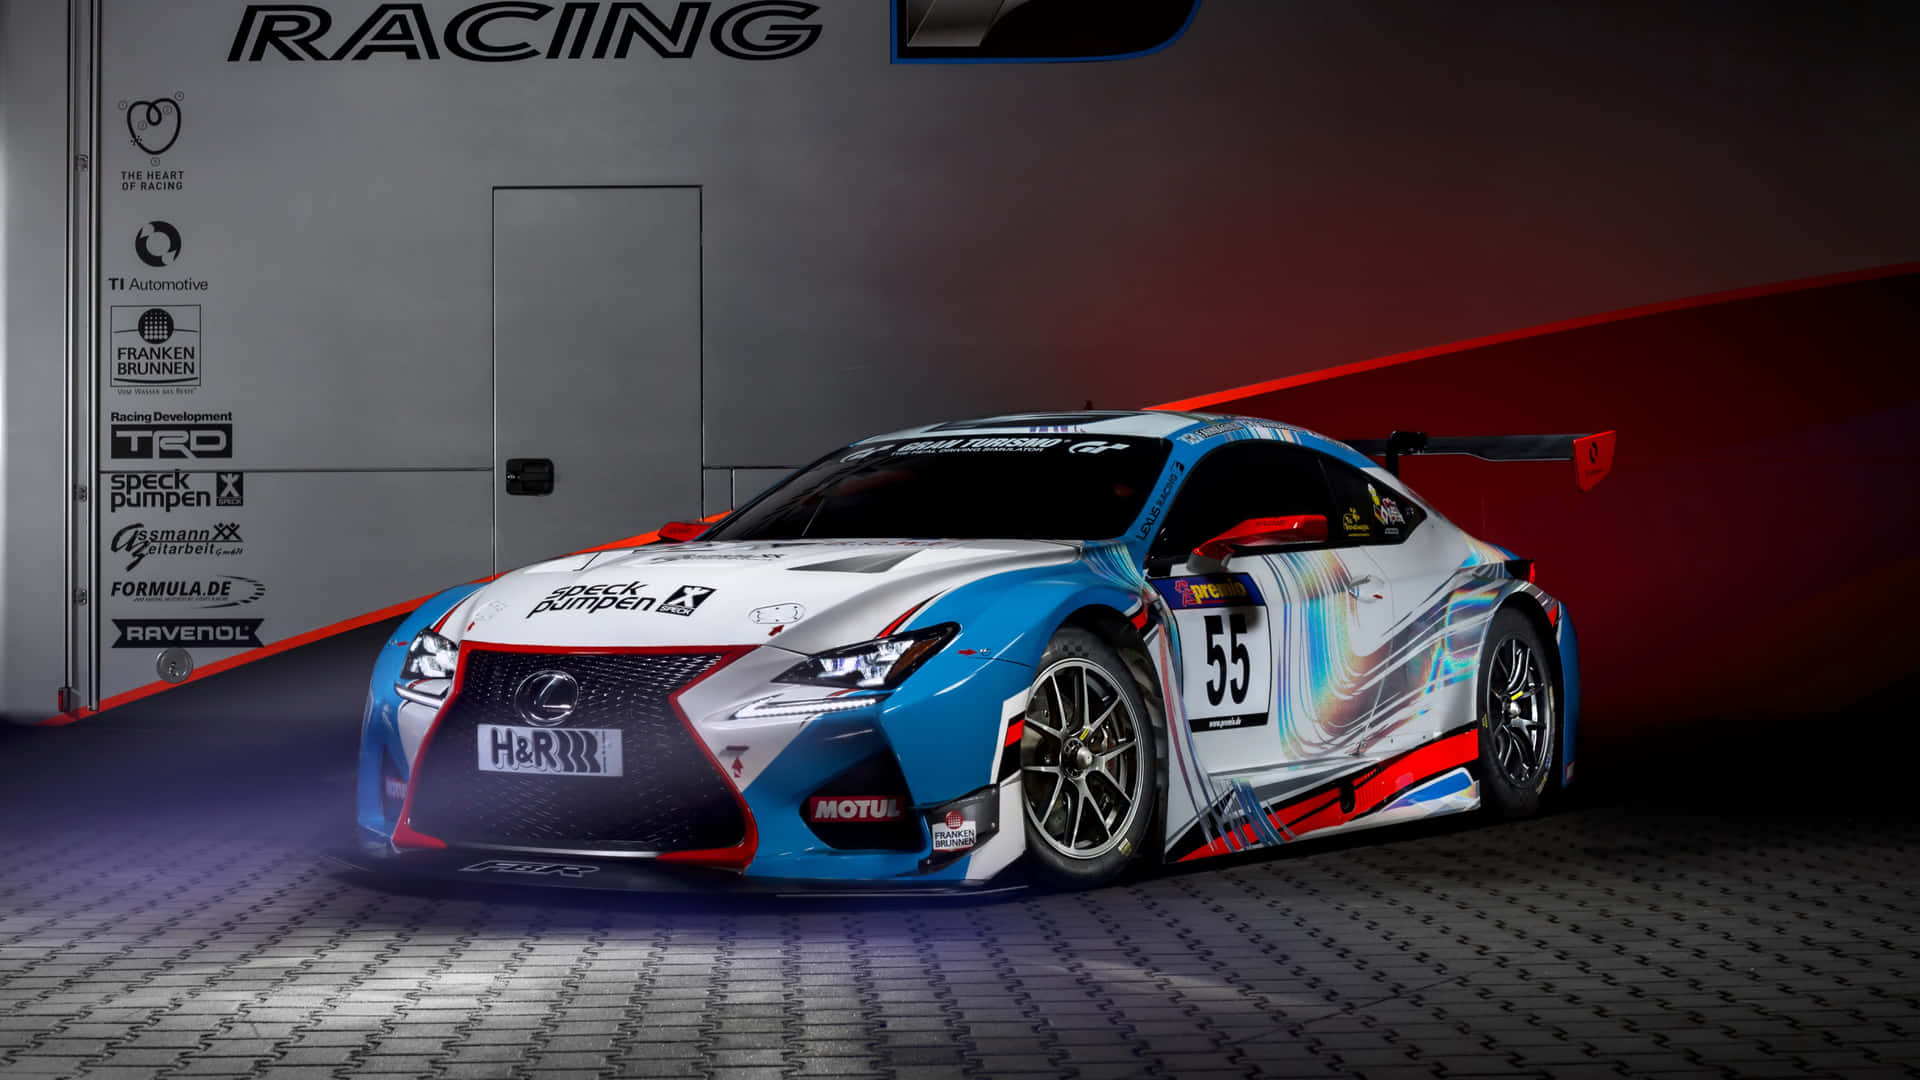 Lexus Rc Racing - Gt3 Gt3 Gt3 Gt3 Gt3 Gt Background